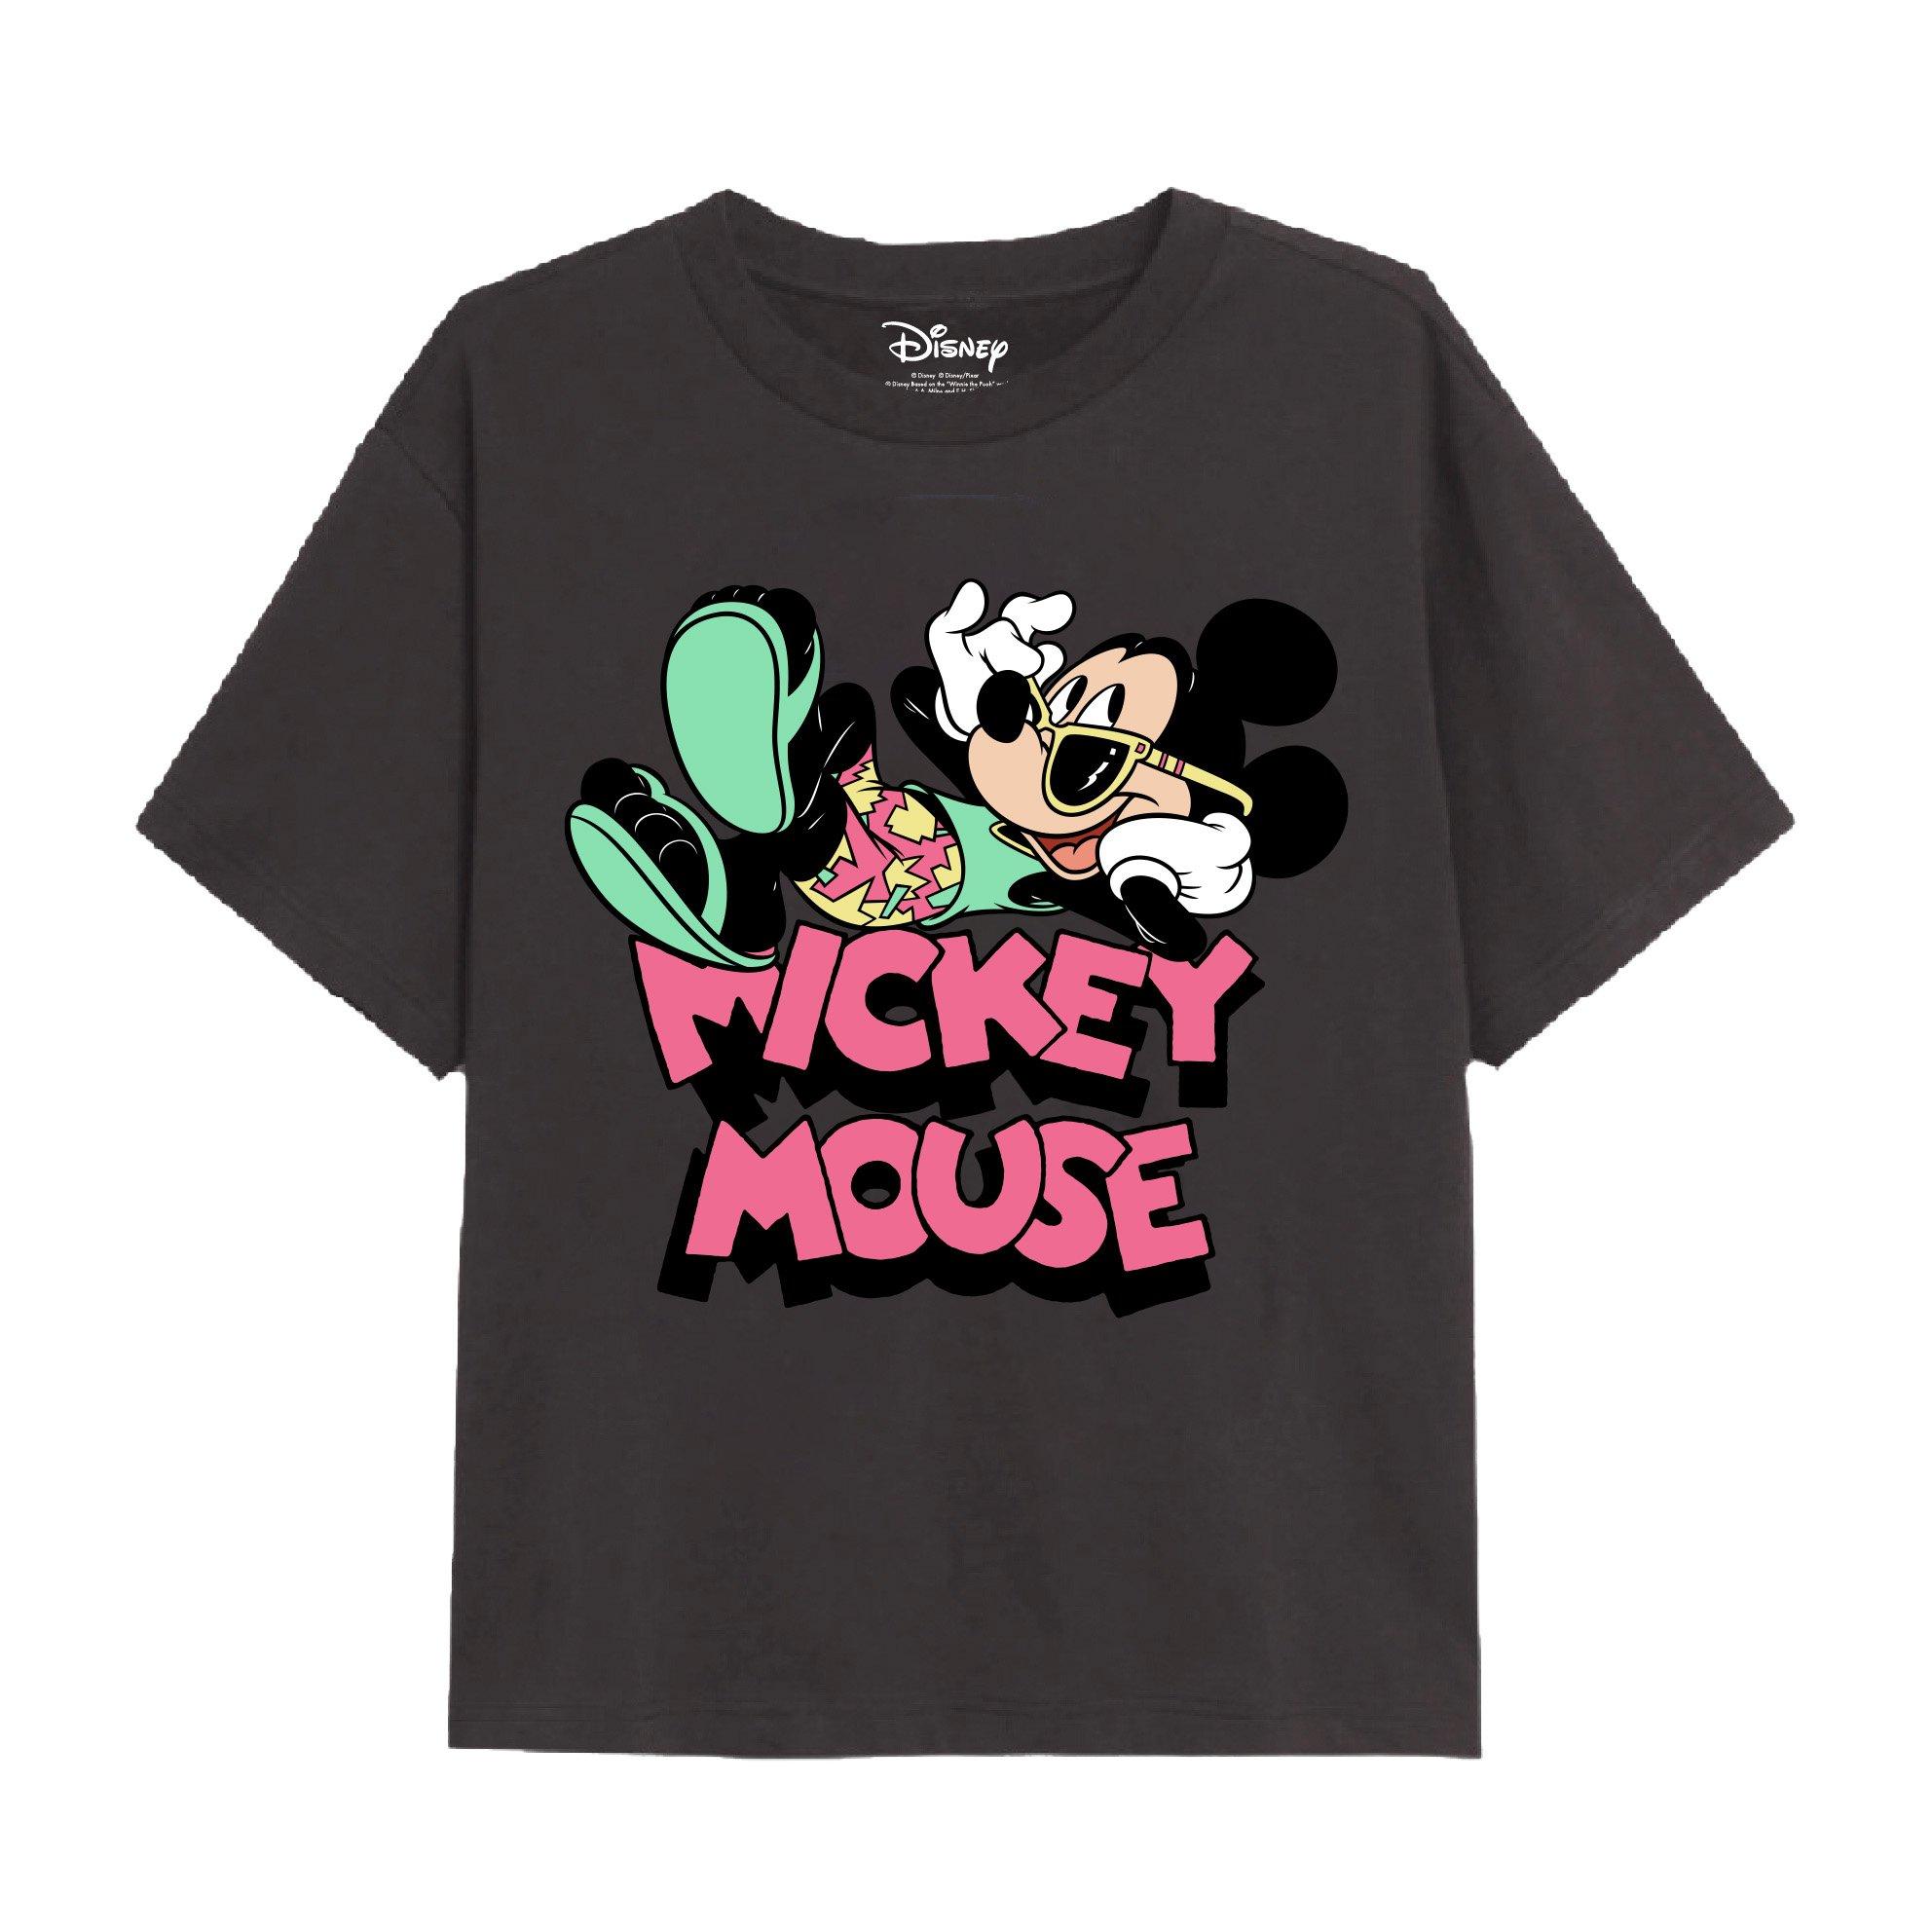 Праздничная футболка с Микки Маусом Disney, серый фотографии